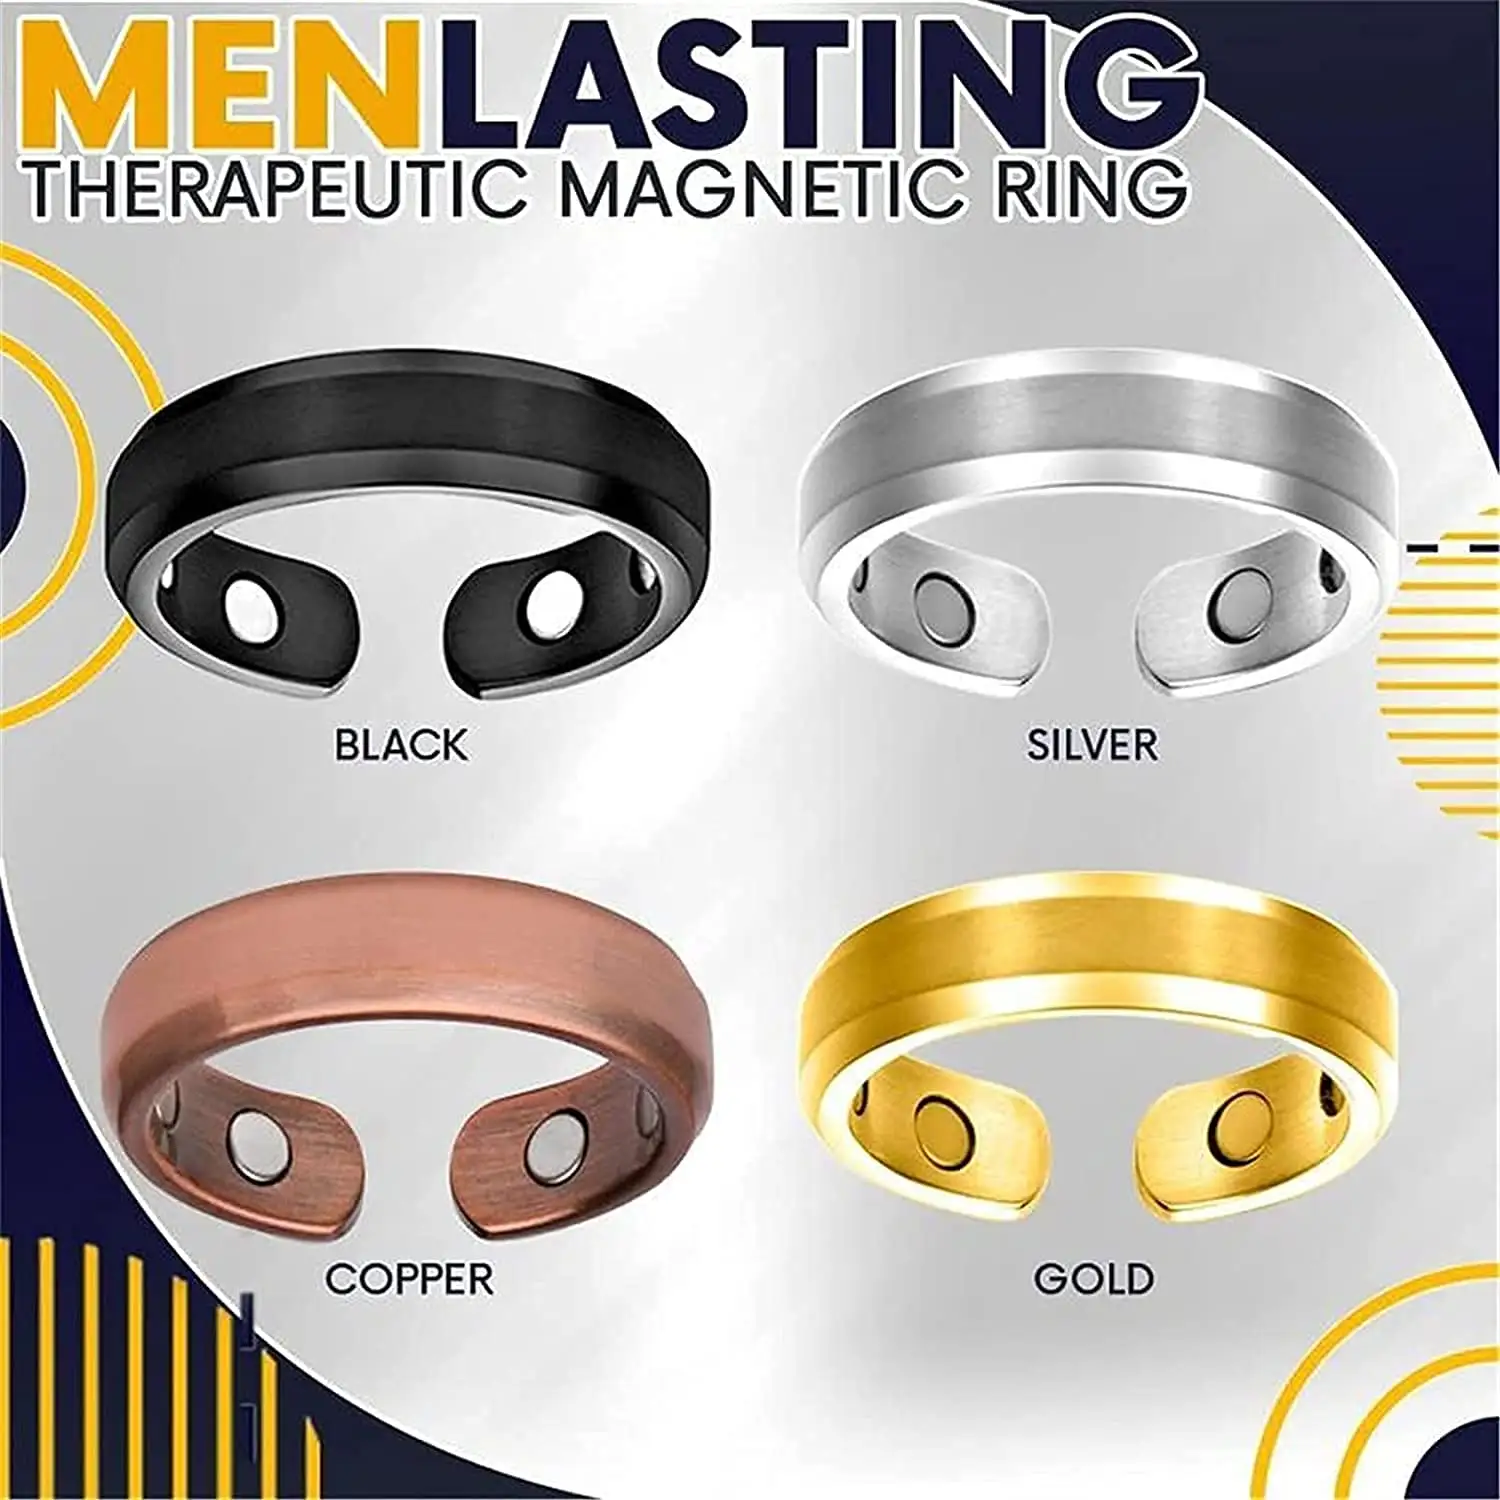 Magnete magnetico Keep Health Ring gioielli creativi anello aperto articoli di gioielli per affari/uomini anello magnetico terapeutico duraturo